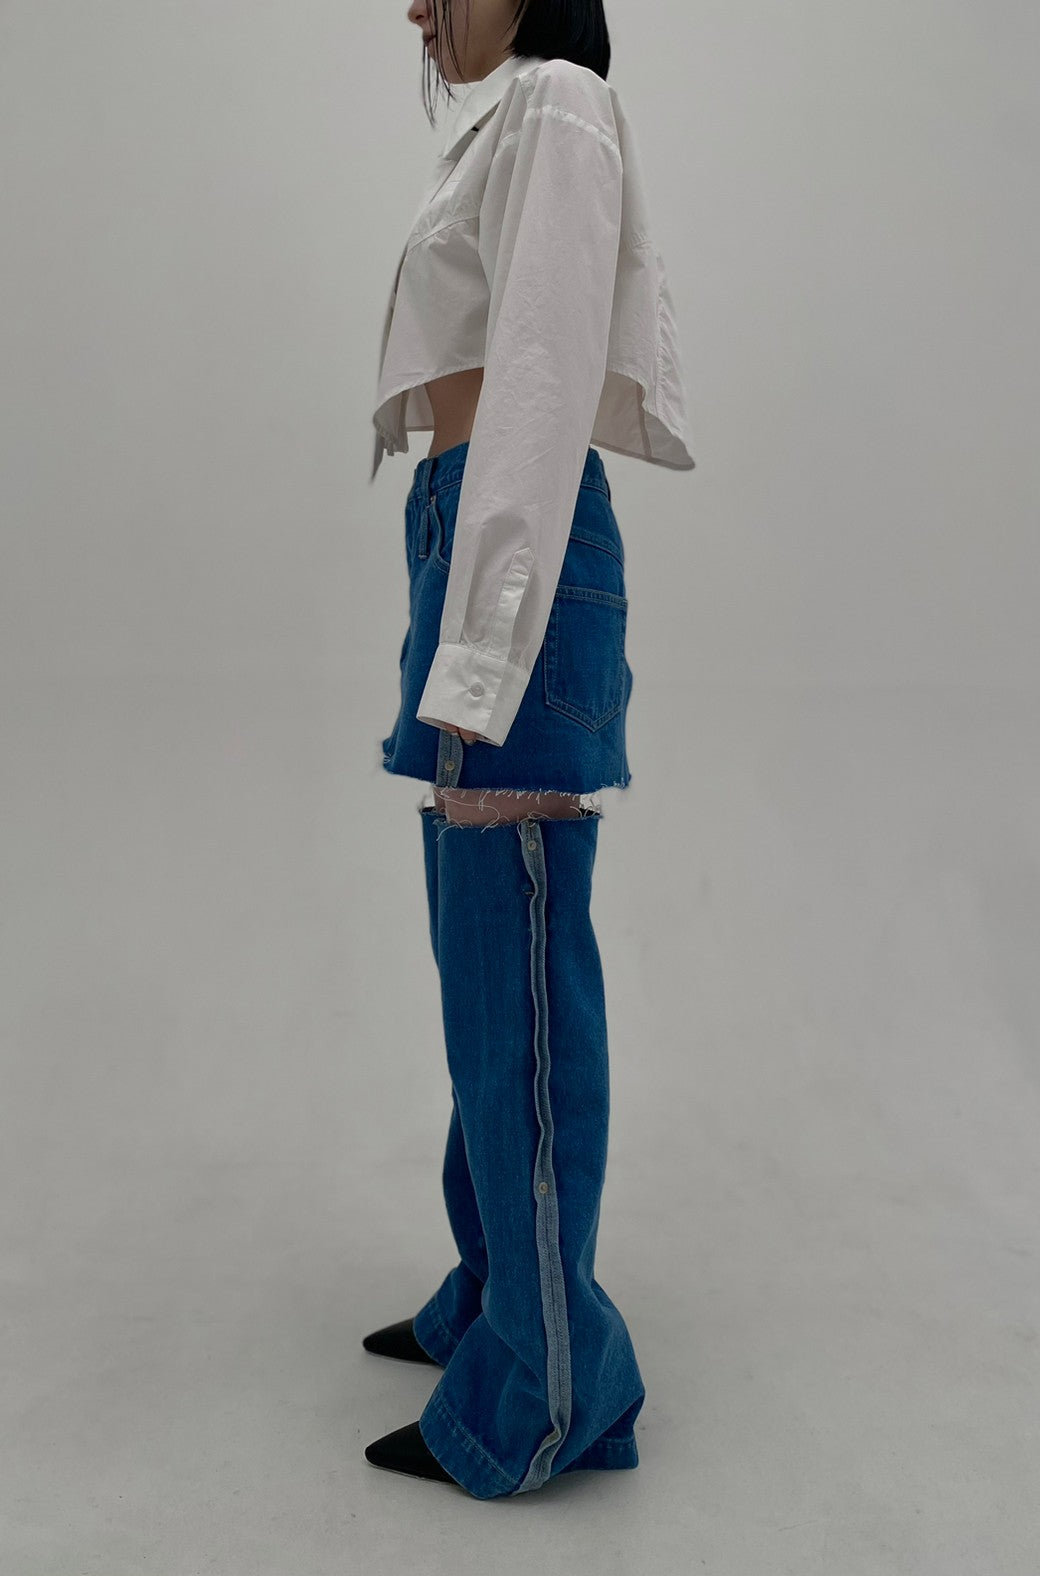 Denim Skirt With Legcover(Blue) – neith.onlinestore